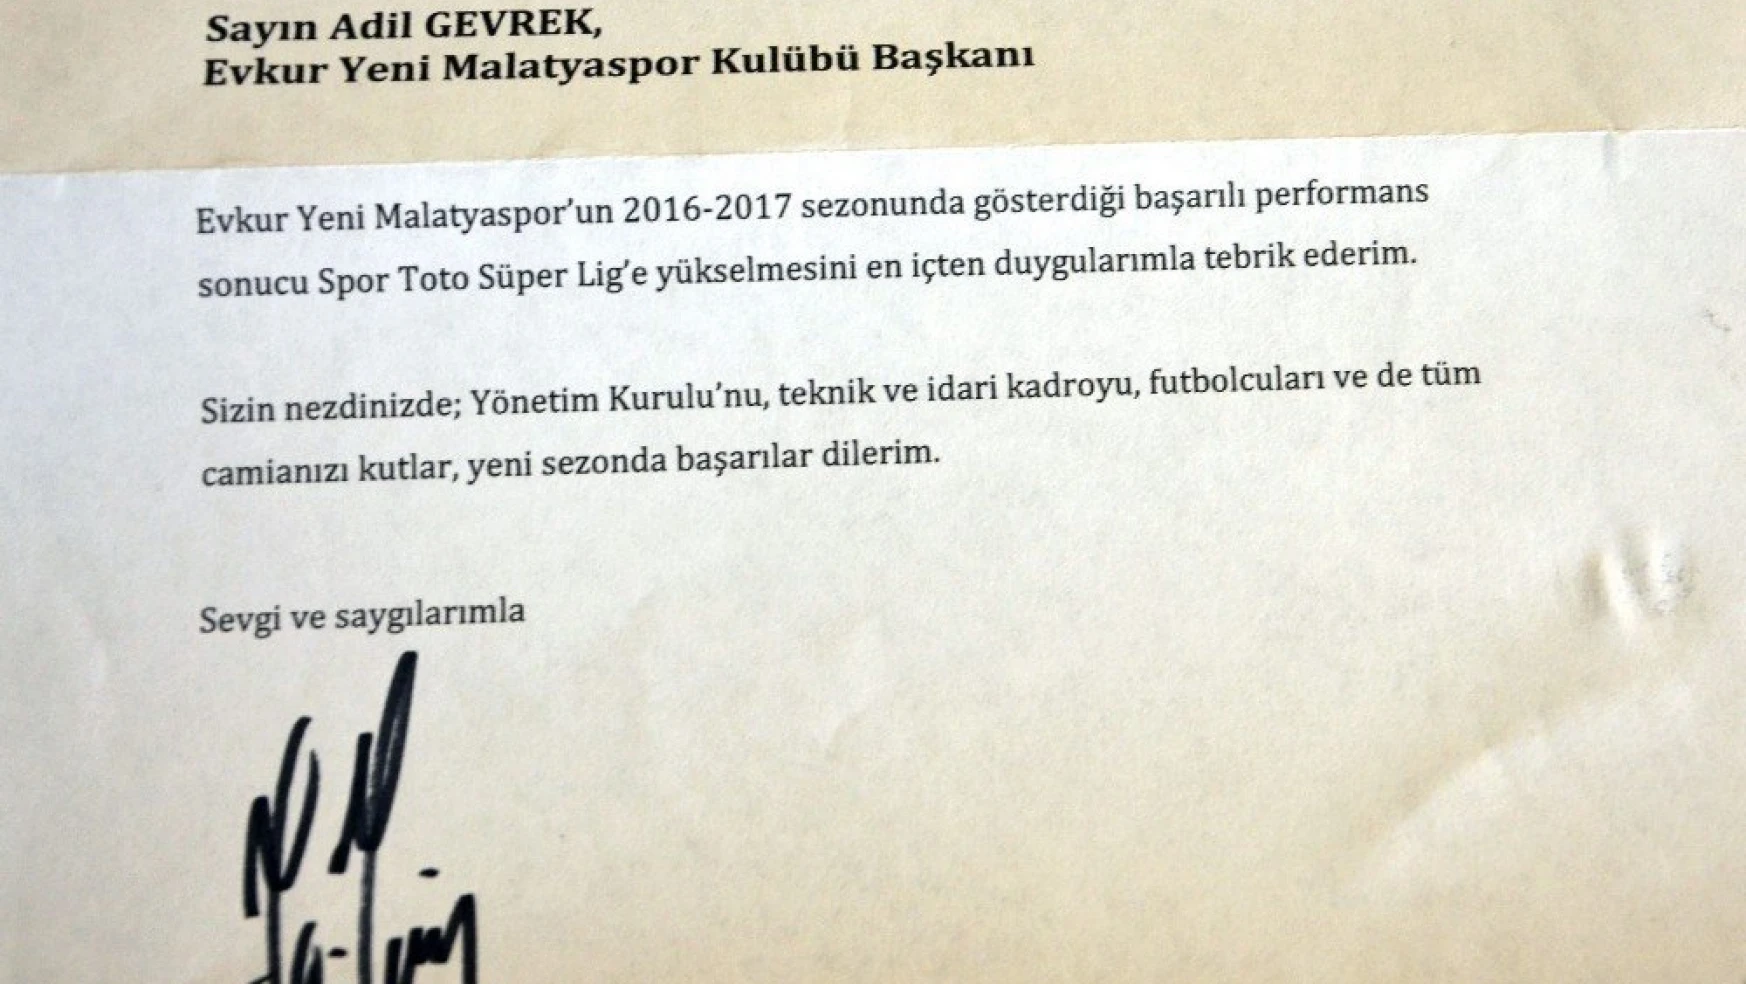 Fatih Terim'den Evkur Yeni Malatyaspor'a kutlama mesajı
